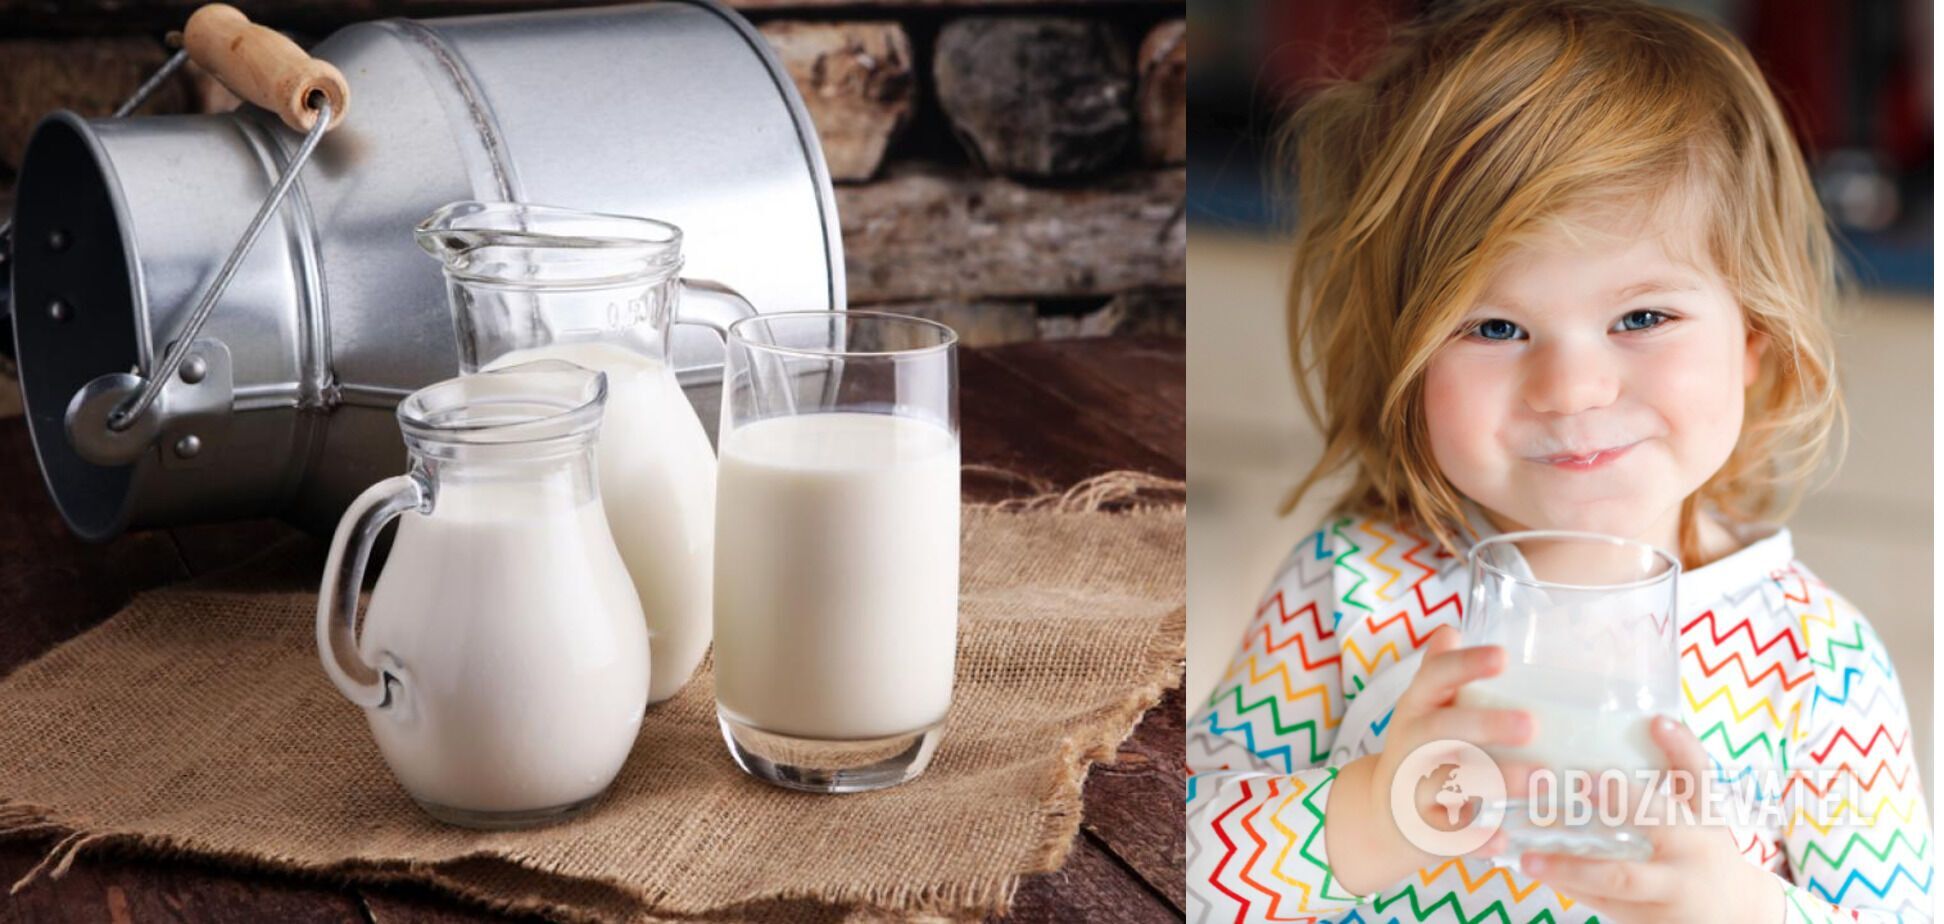 Naukowcy są przekonani, że osoby, które wcześniej nie akceptowały mleka, teraz będą mogły pić A2